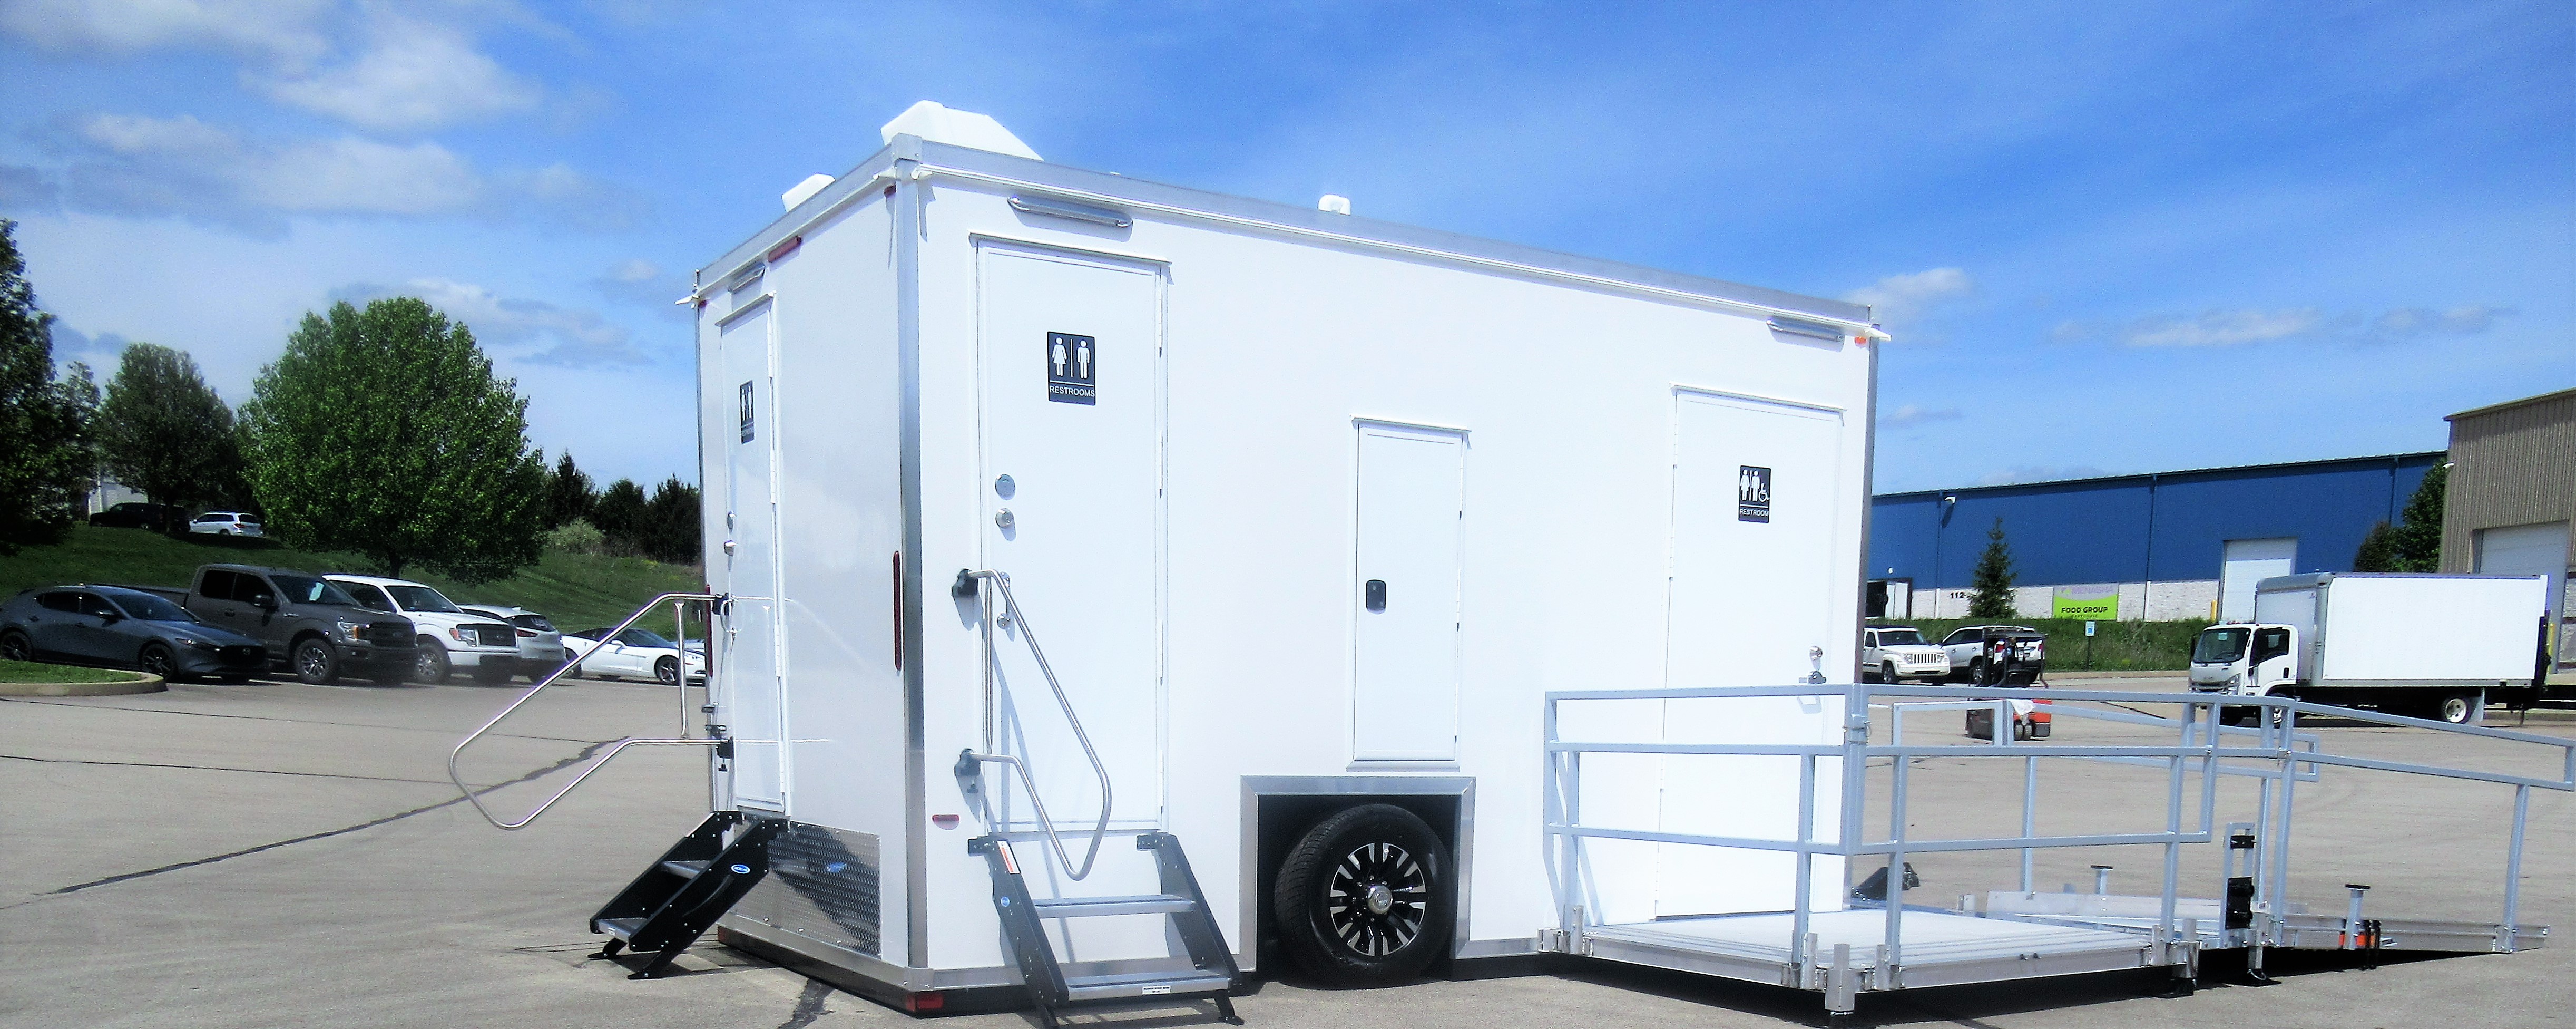 portable restroom trailer manufacturer